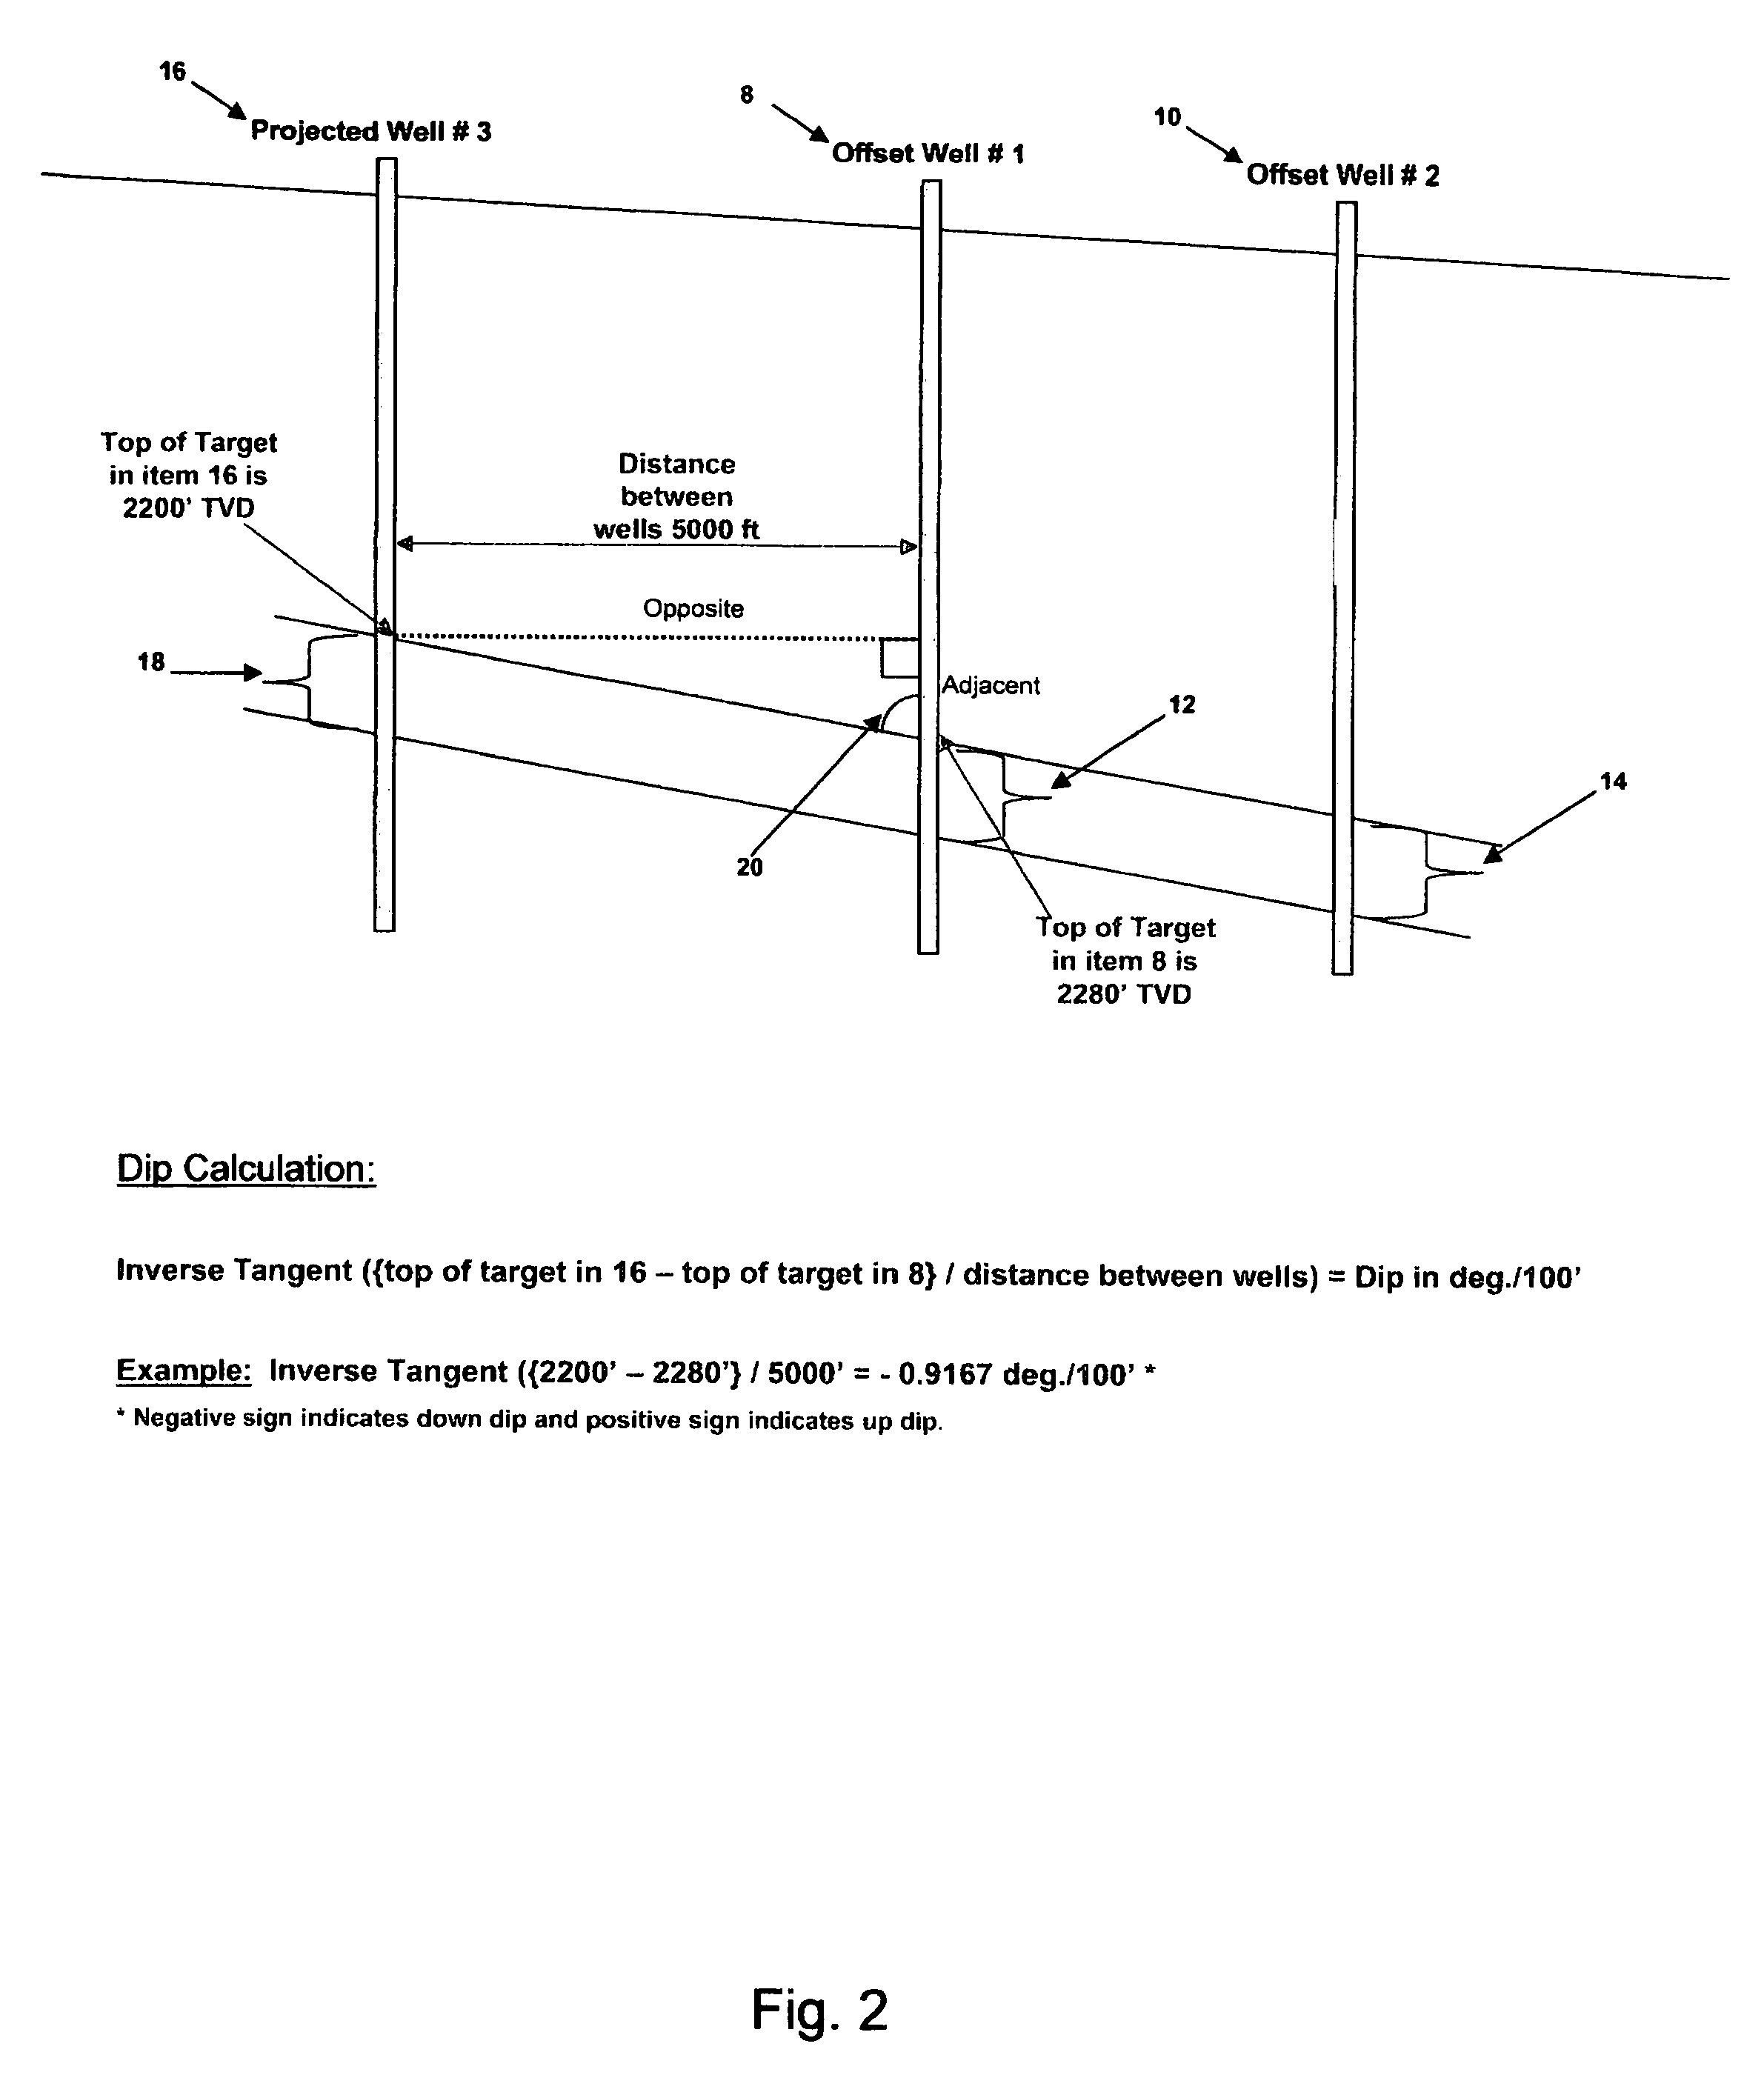 Formation dip geo-steering method